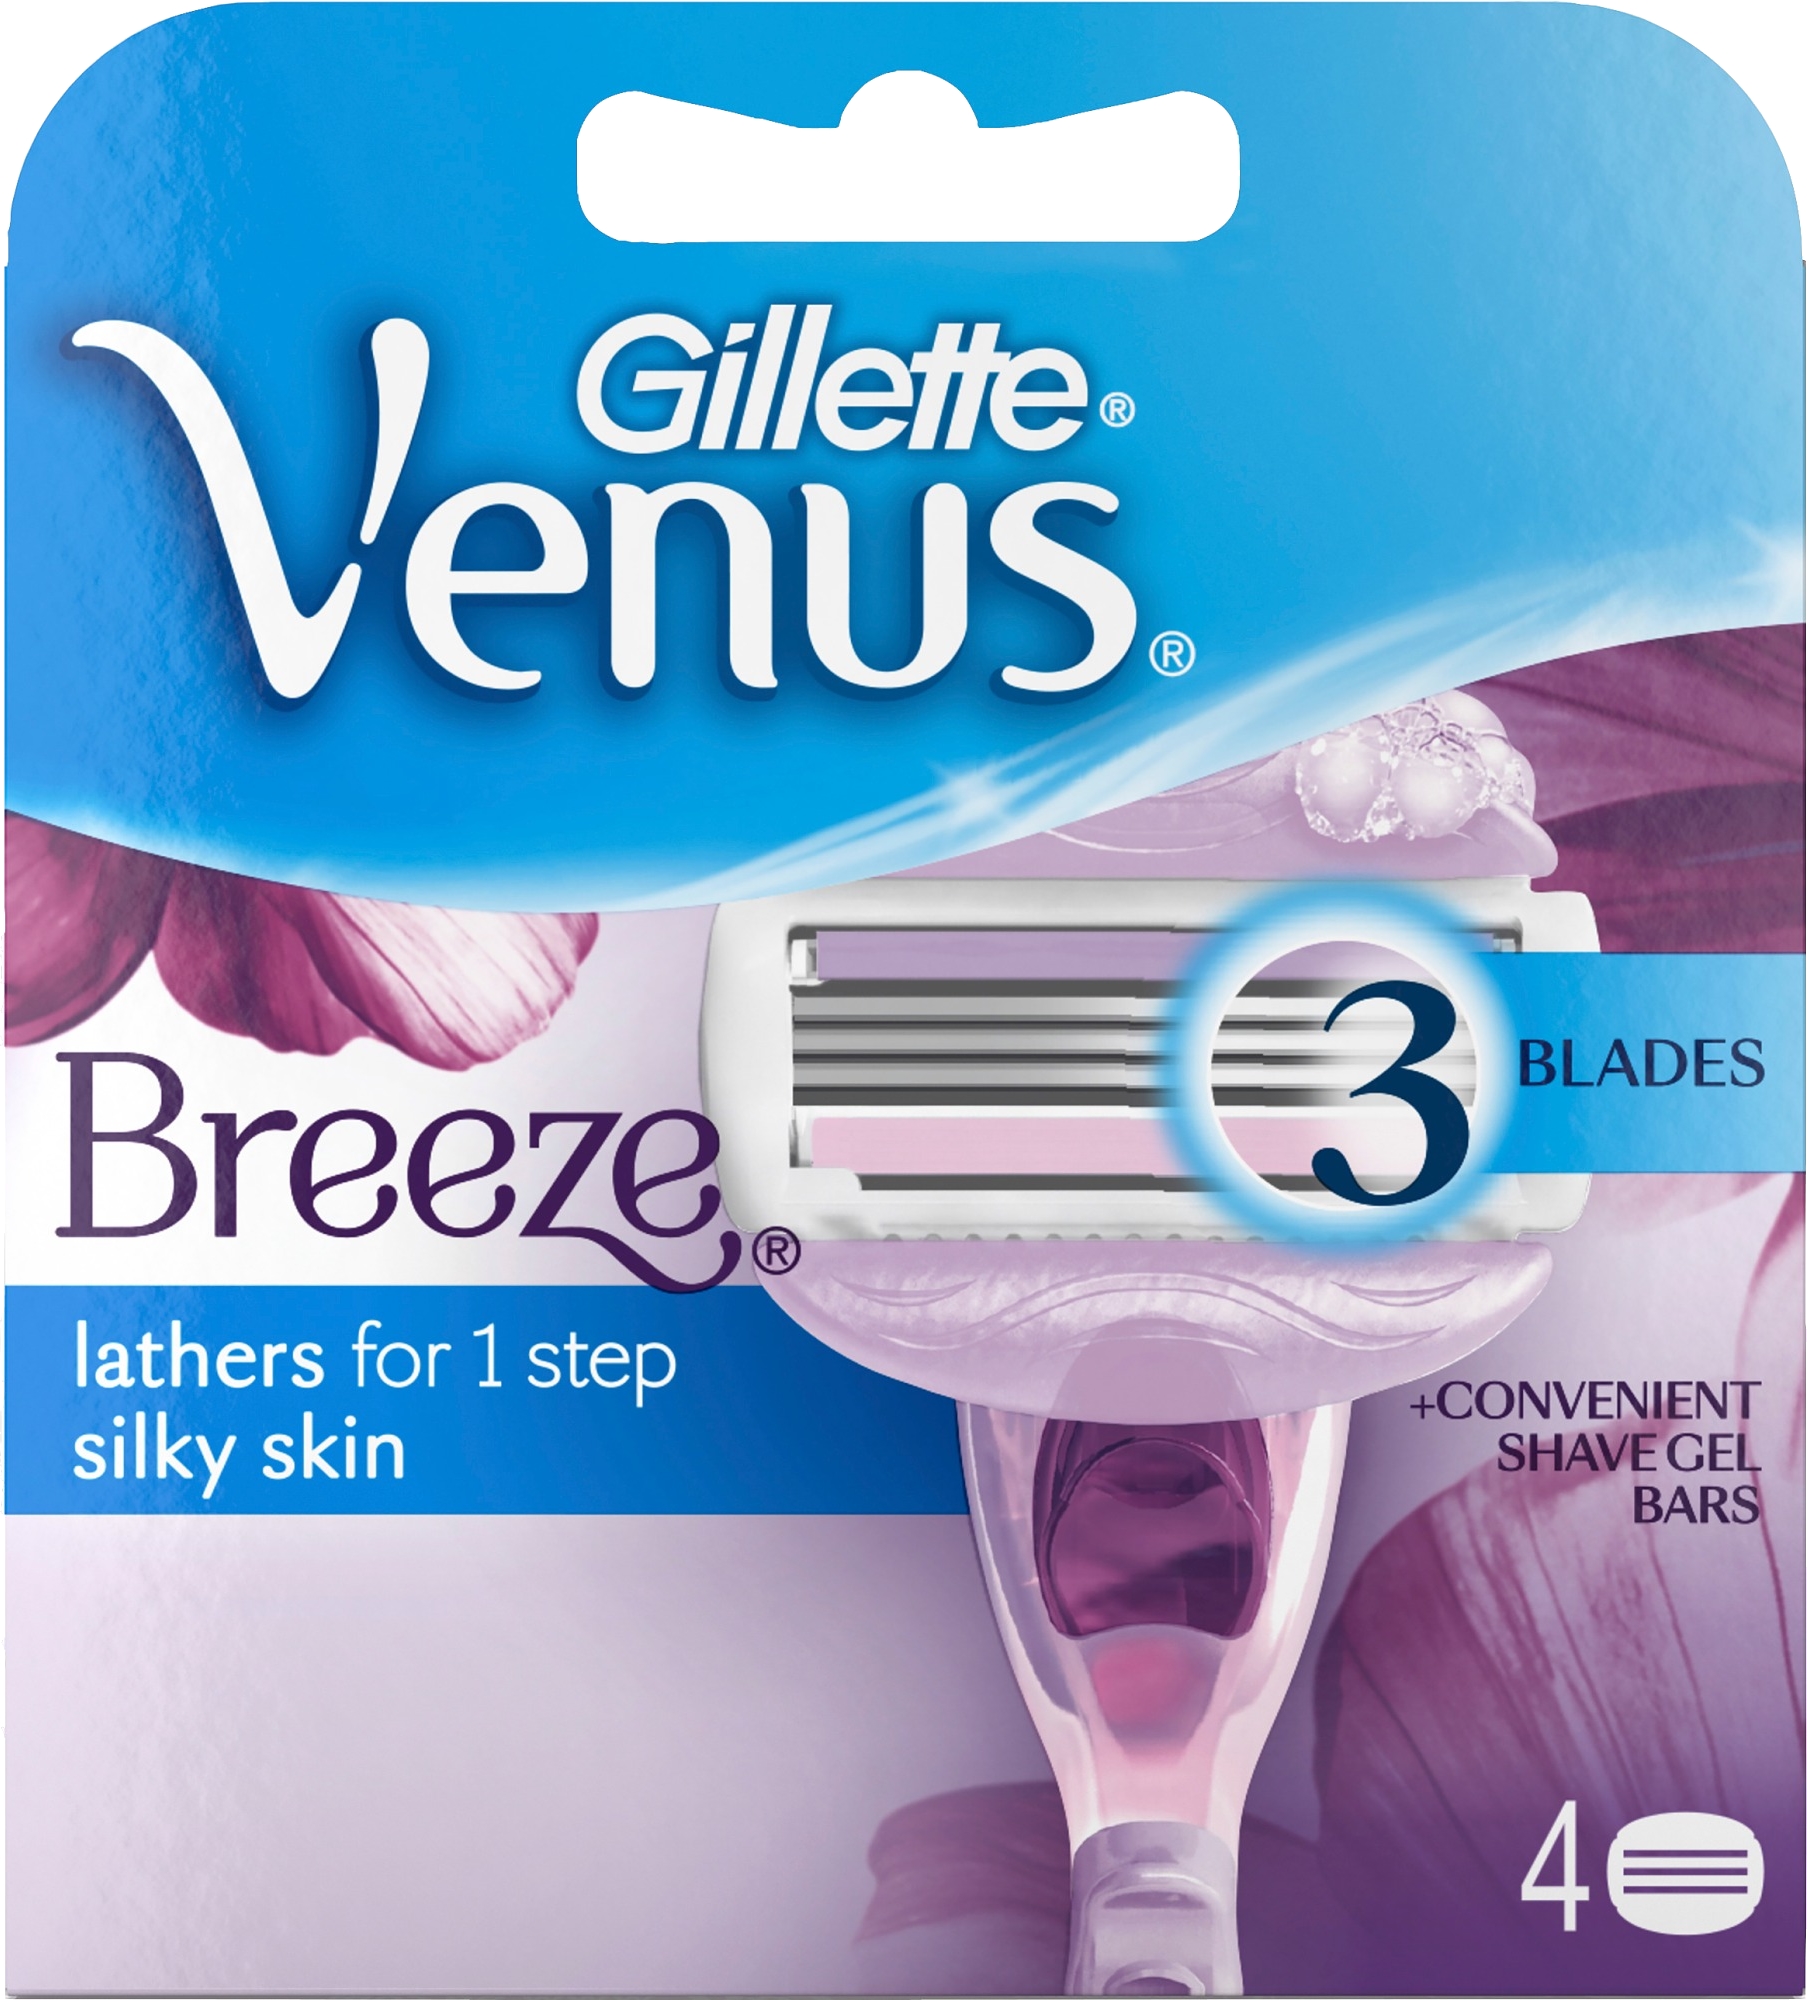 Gillette Venus Breeze Barberblade Refill stk. - PERSONLIG PLEJE - VIN MED MERE .DK